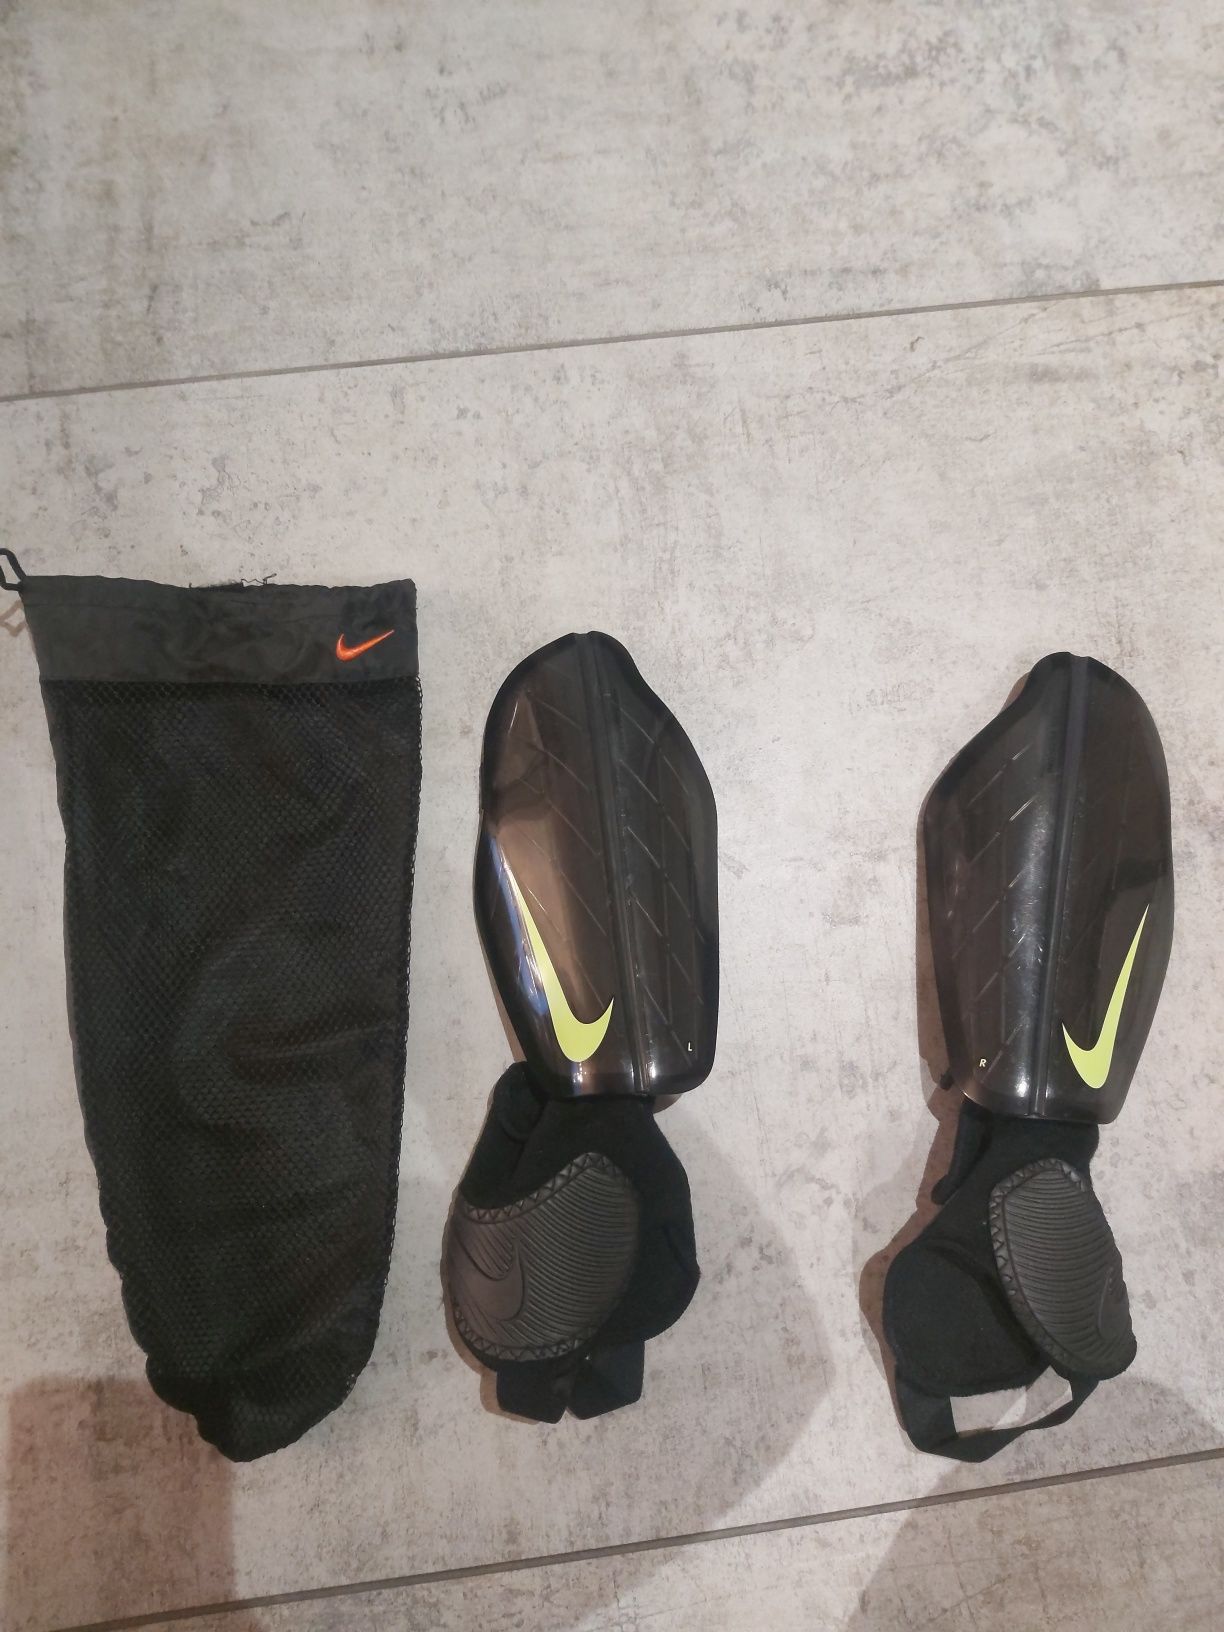 Ochraniacze Nike na łydki